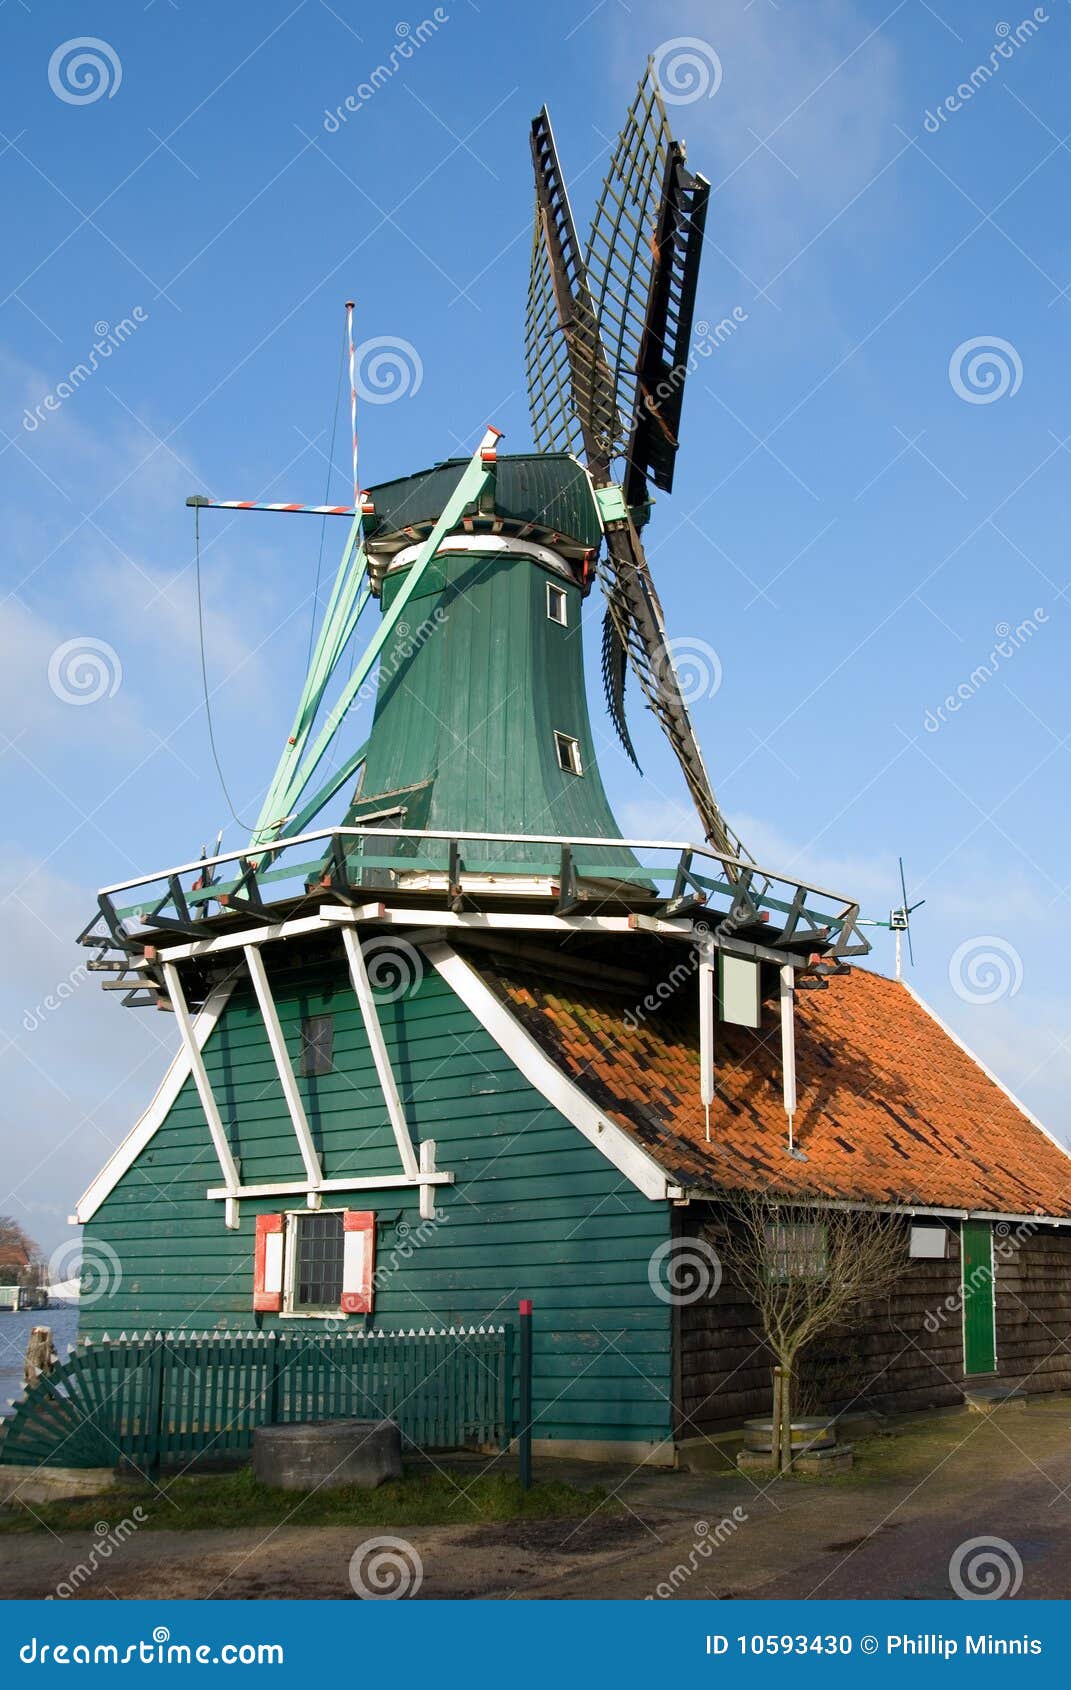 Dutch Windmill Stock Photo - Image: 10593430